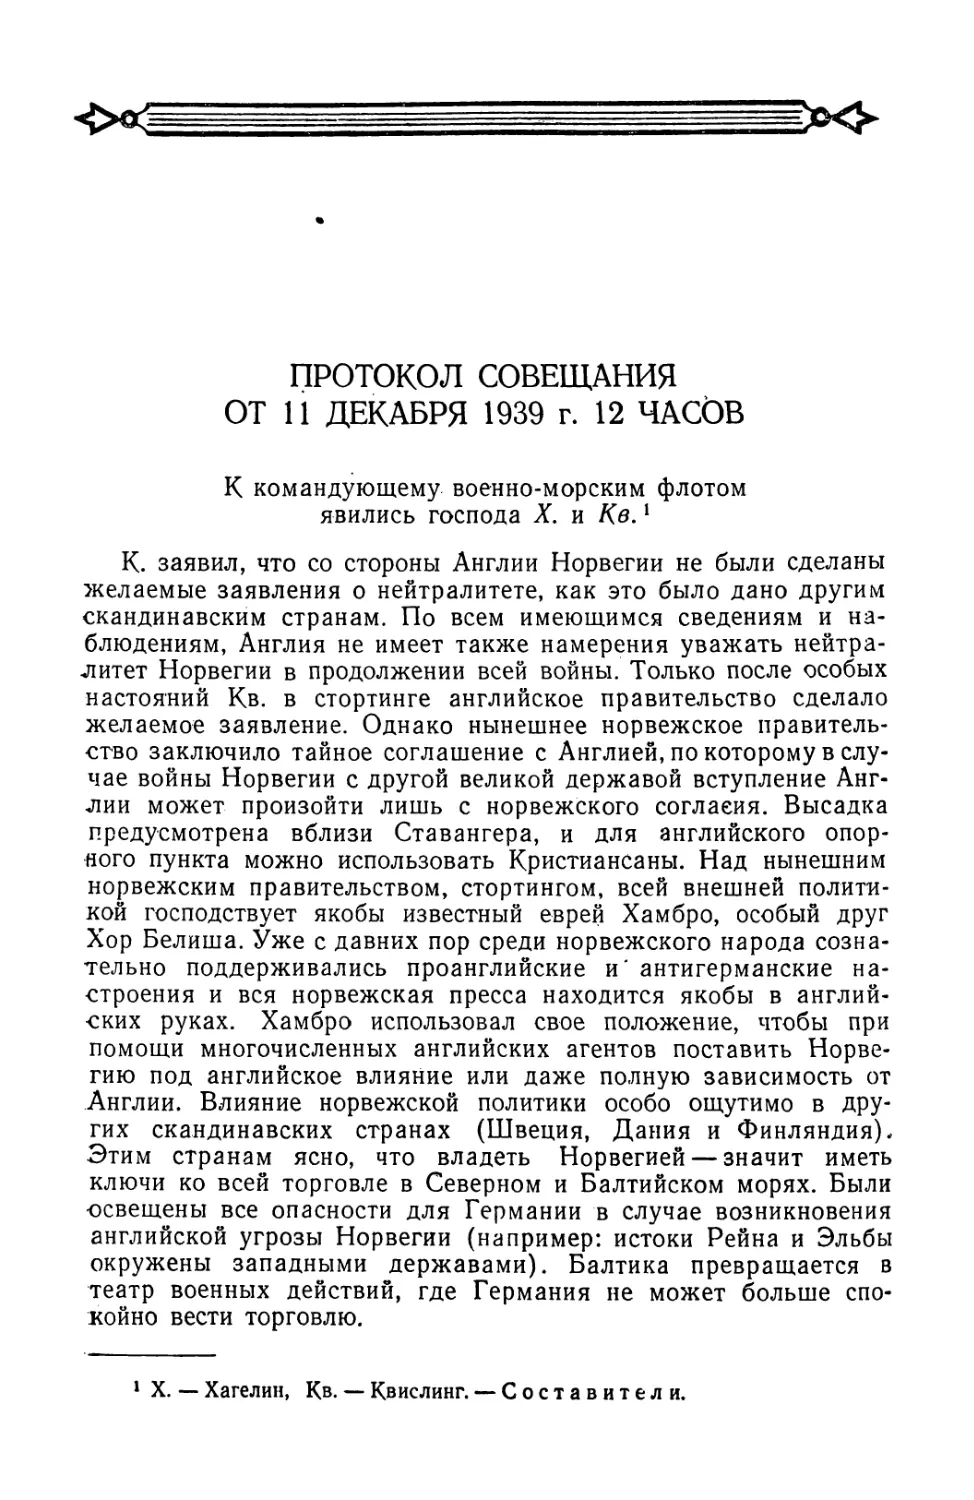 Протокол совещания от 11 декабря 1939 г. у Редера с участием Хагелина и Квислинга